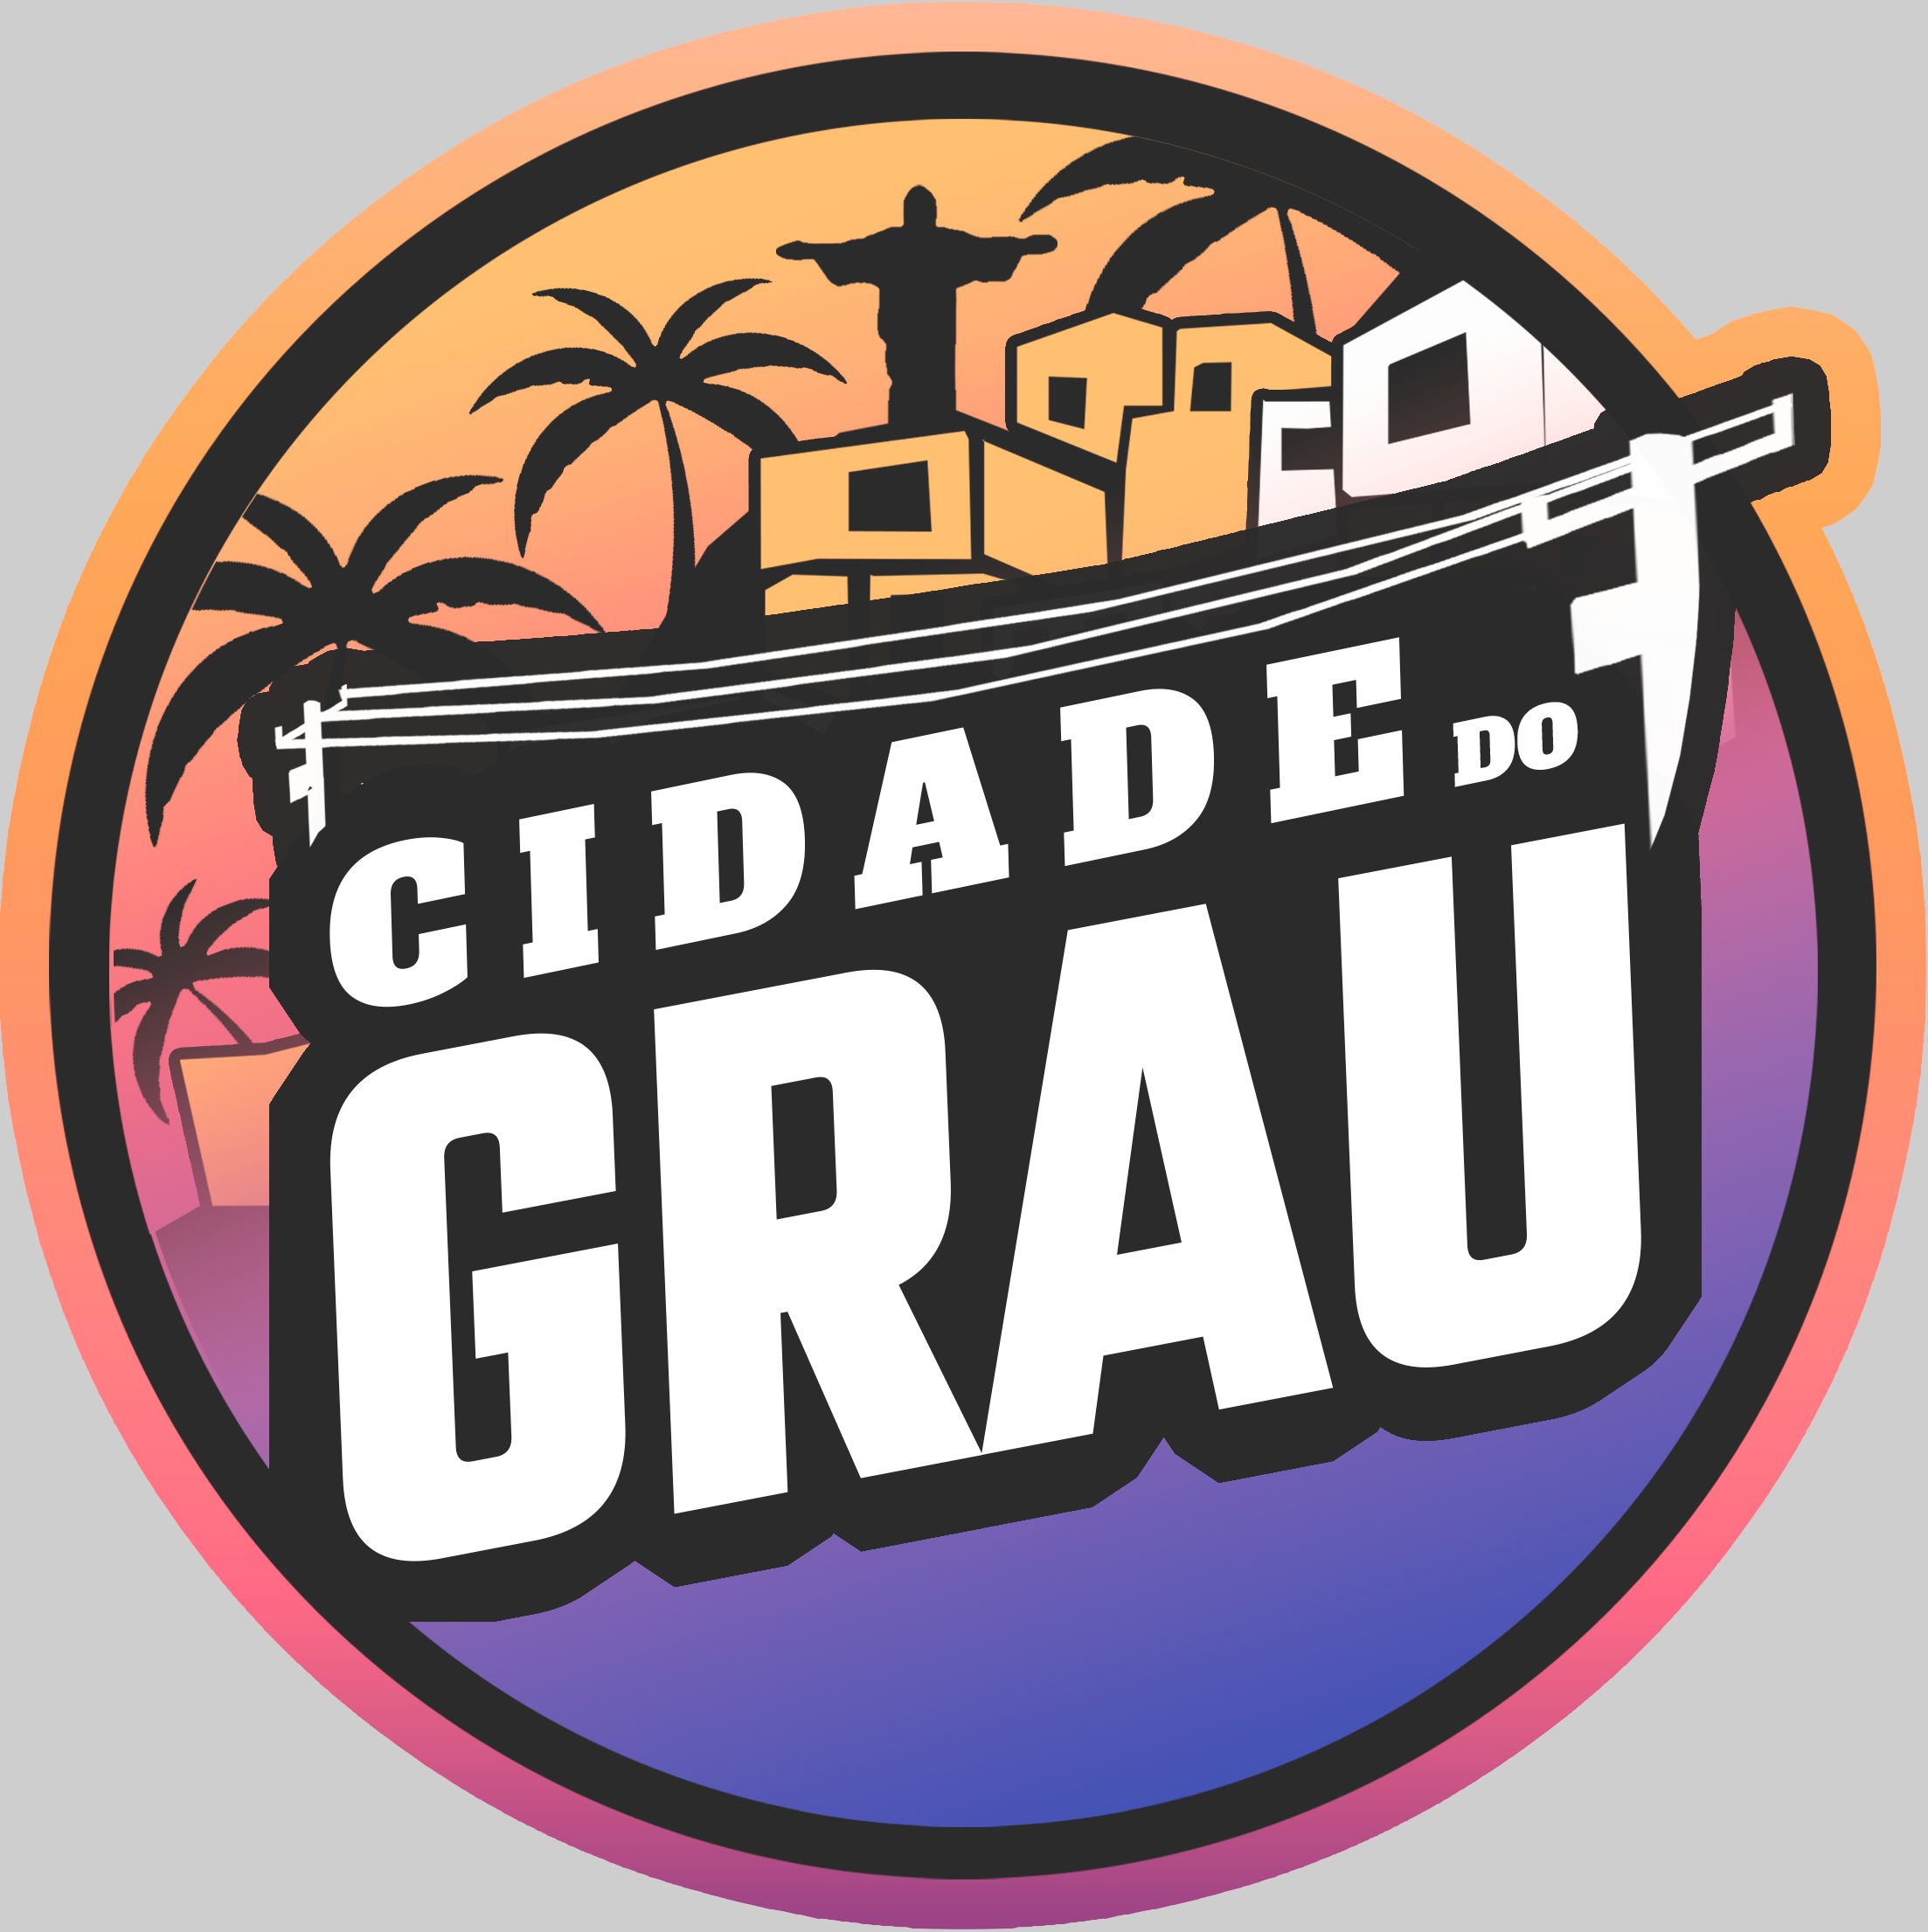 Motos Vlog no Grau Brasil para Android - Download